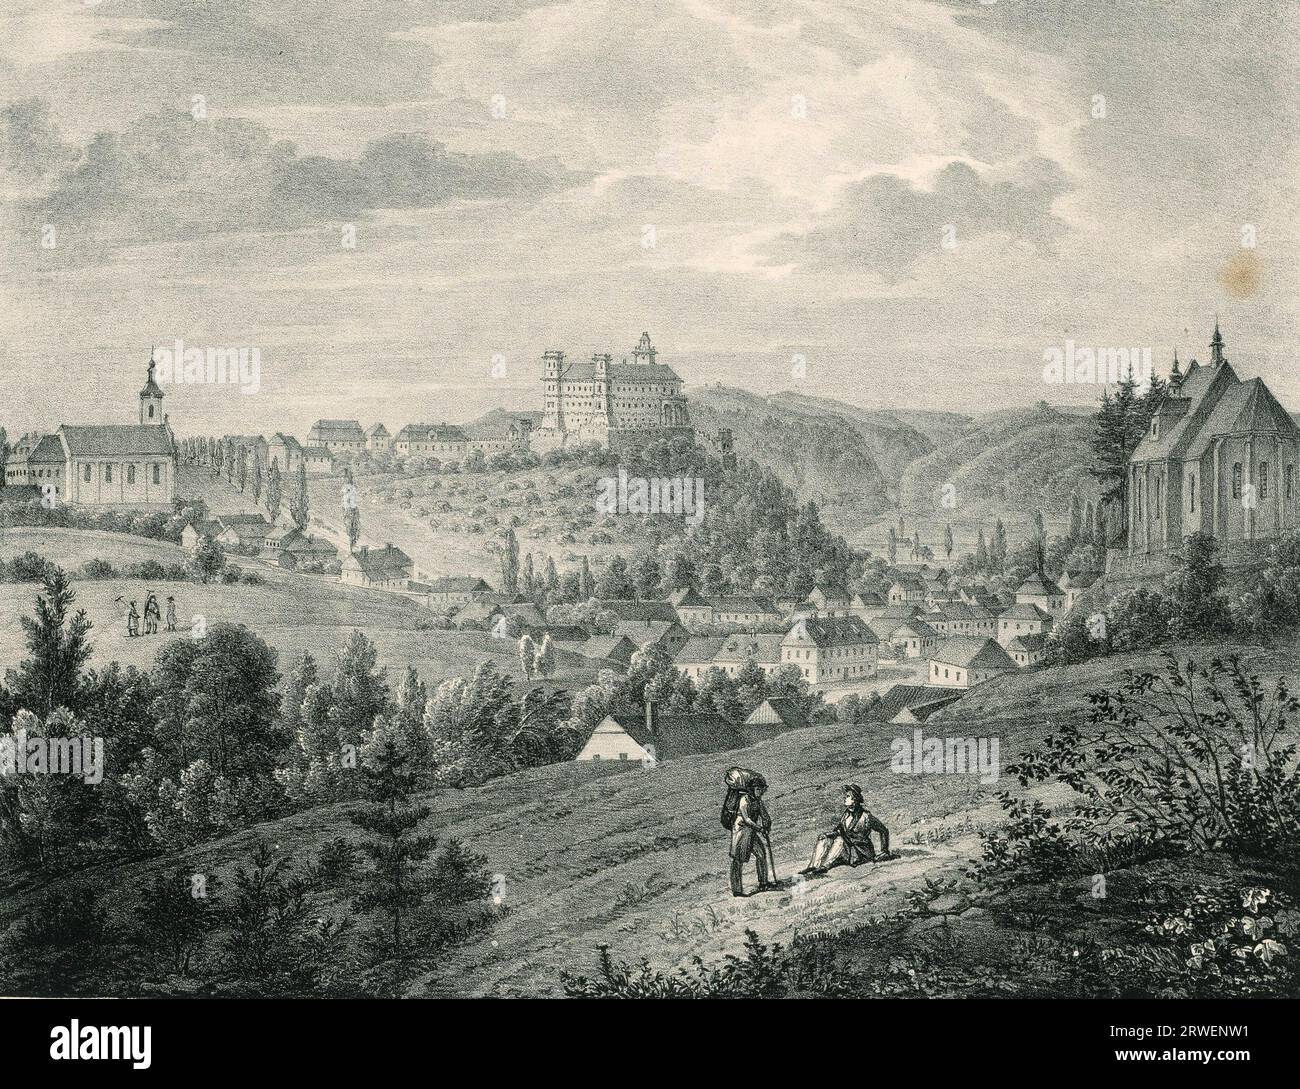 Vue du château de Lettowitz, château de Letovice en Moravie, Moravie, 1838, République tchèque, Historique, reproduction restaurée numériquement de l'original du 19e siècle Banque D'Images